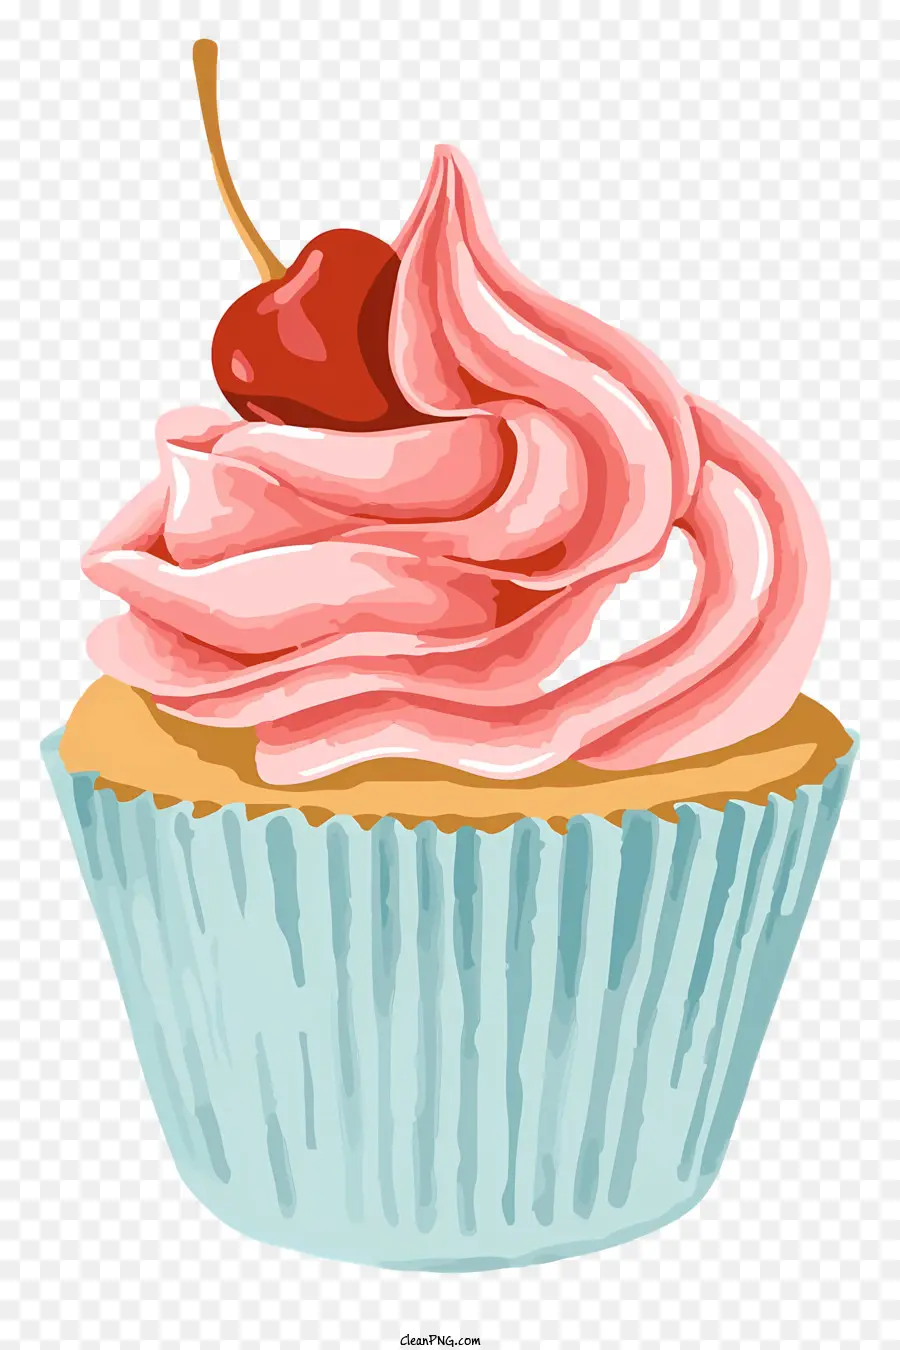 cupcake rosa panna montata ciliegia sulla glassa bianca con cupcake con ciliegia - Cupcake rosa con panna montata e ciliegia